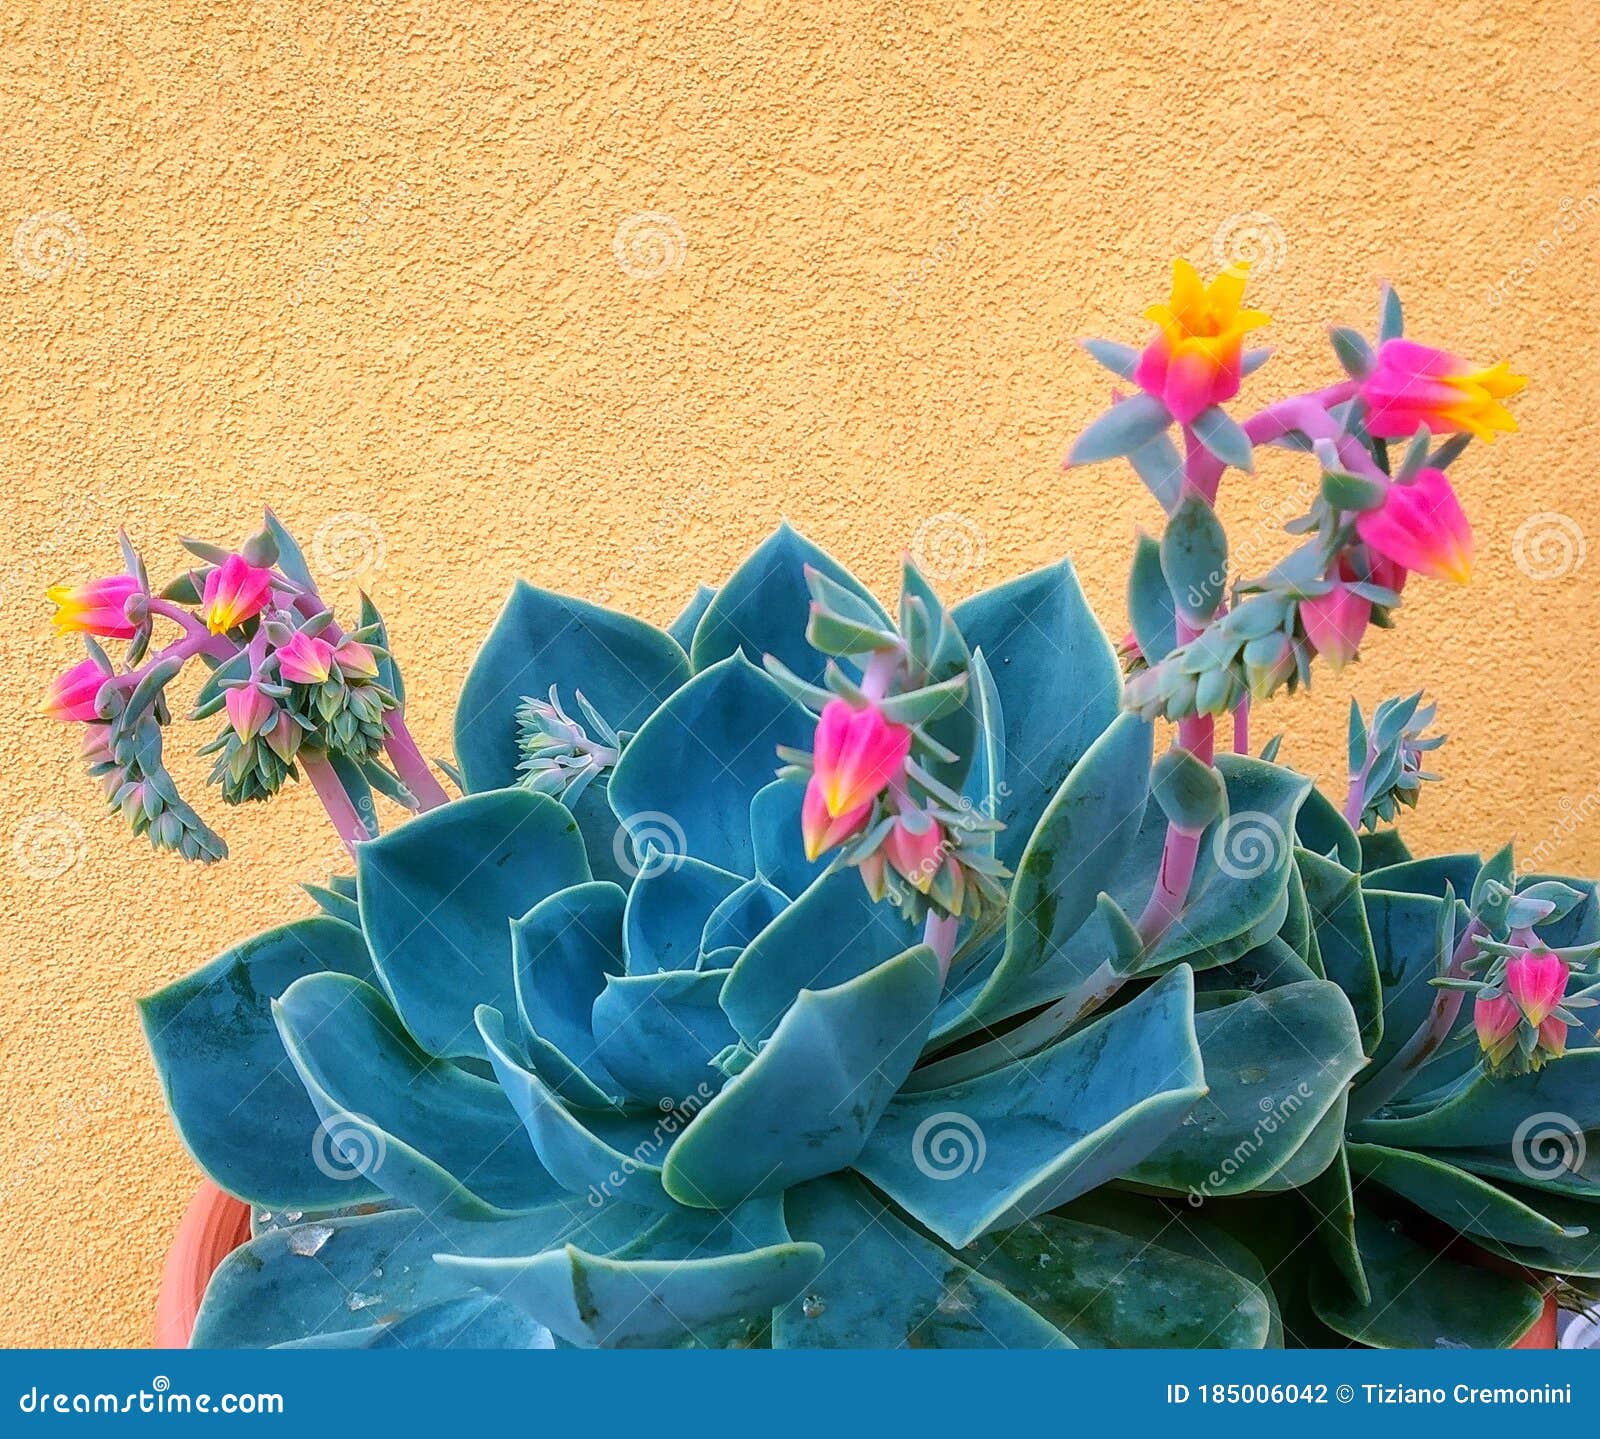 flower and plant, echeveria, "rosa del deserto", multicolored flowers